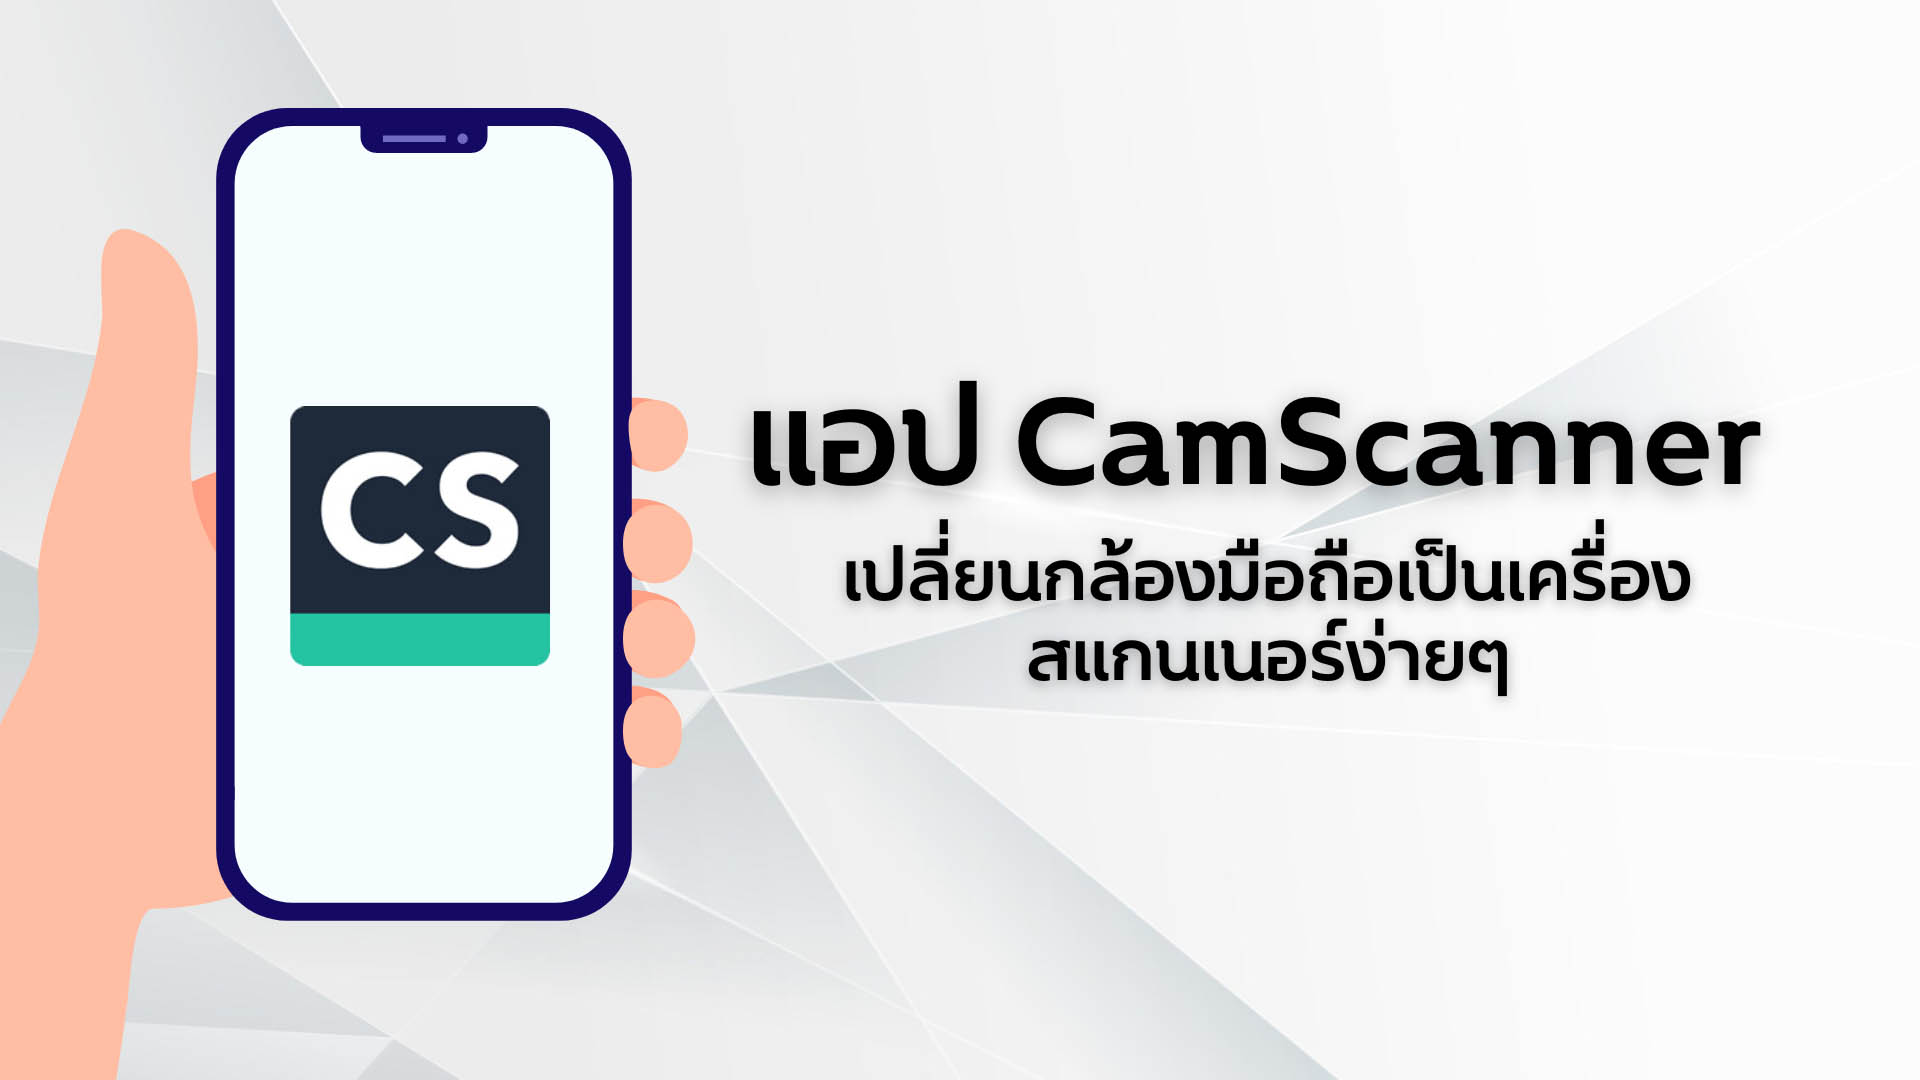 แอป CamScanner